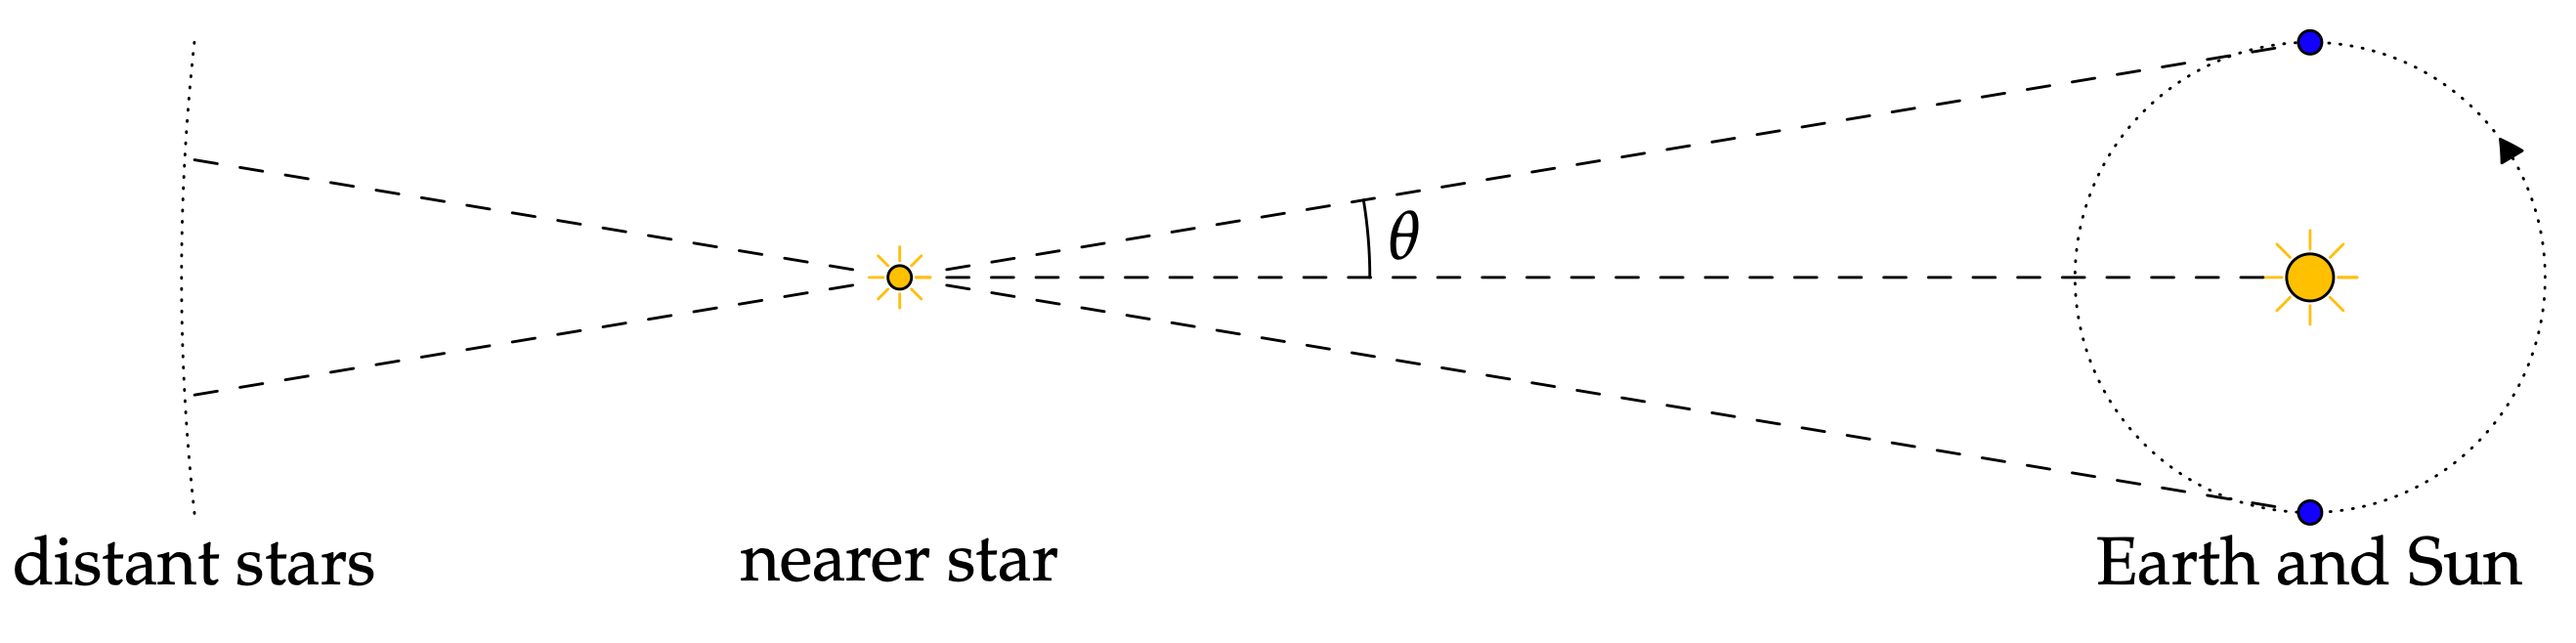 пример за астрономия - изображение от www.math.uci.edu